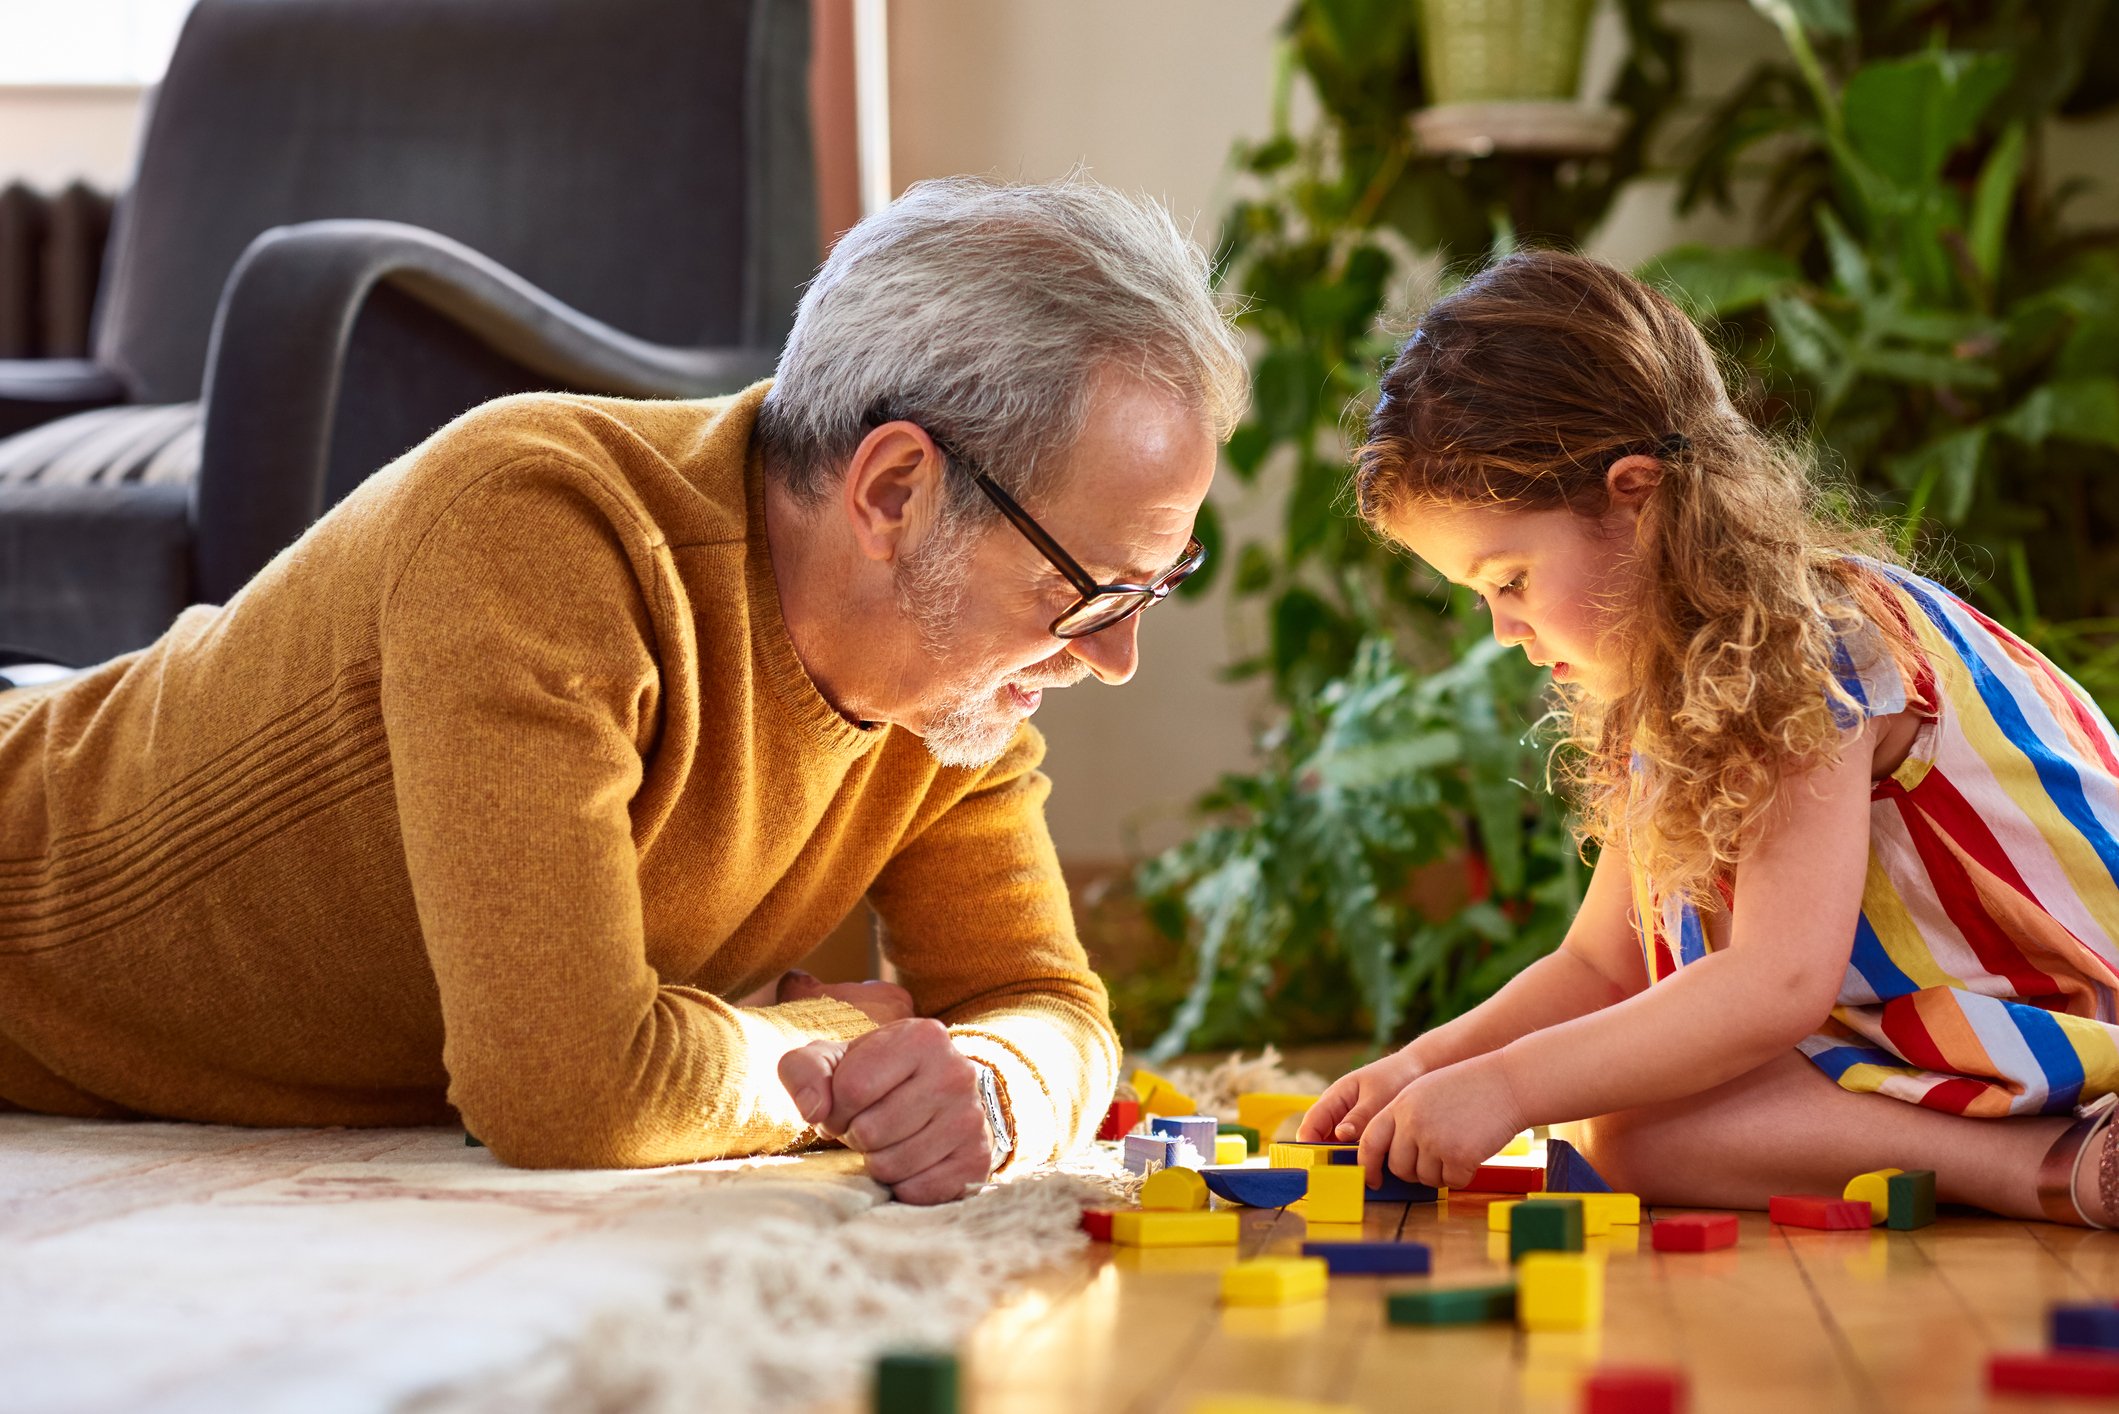 Jörn liebte es, seiner Enkelin beim Spielen zuzusehen. | Quelle: Getty Images